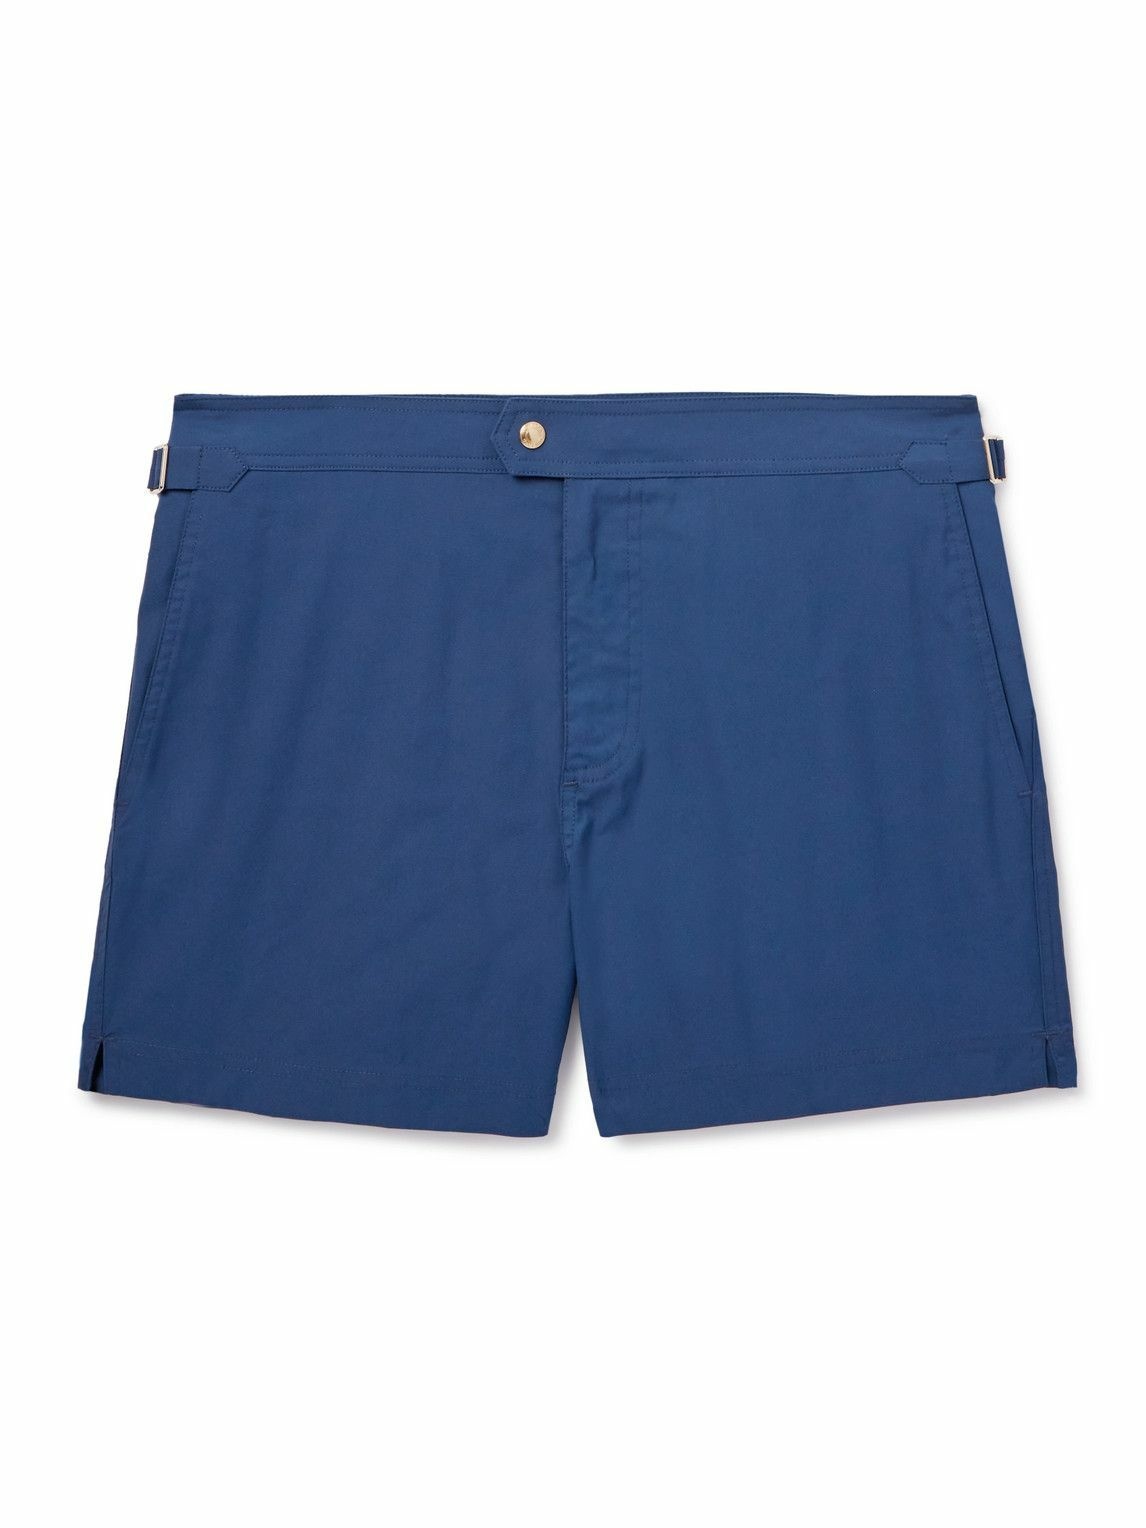 Photo: TOM FORD - Slim-Fit Short-Length Swim Shorts - Blue